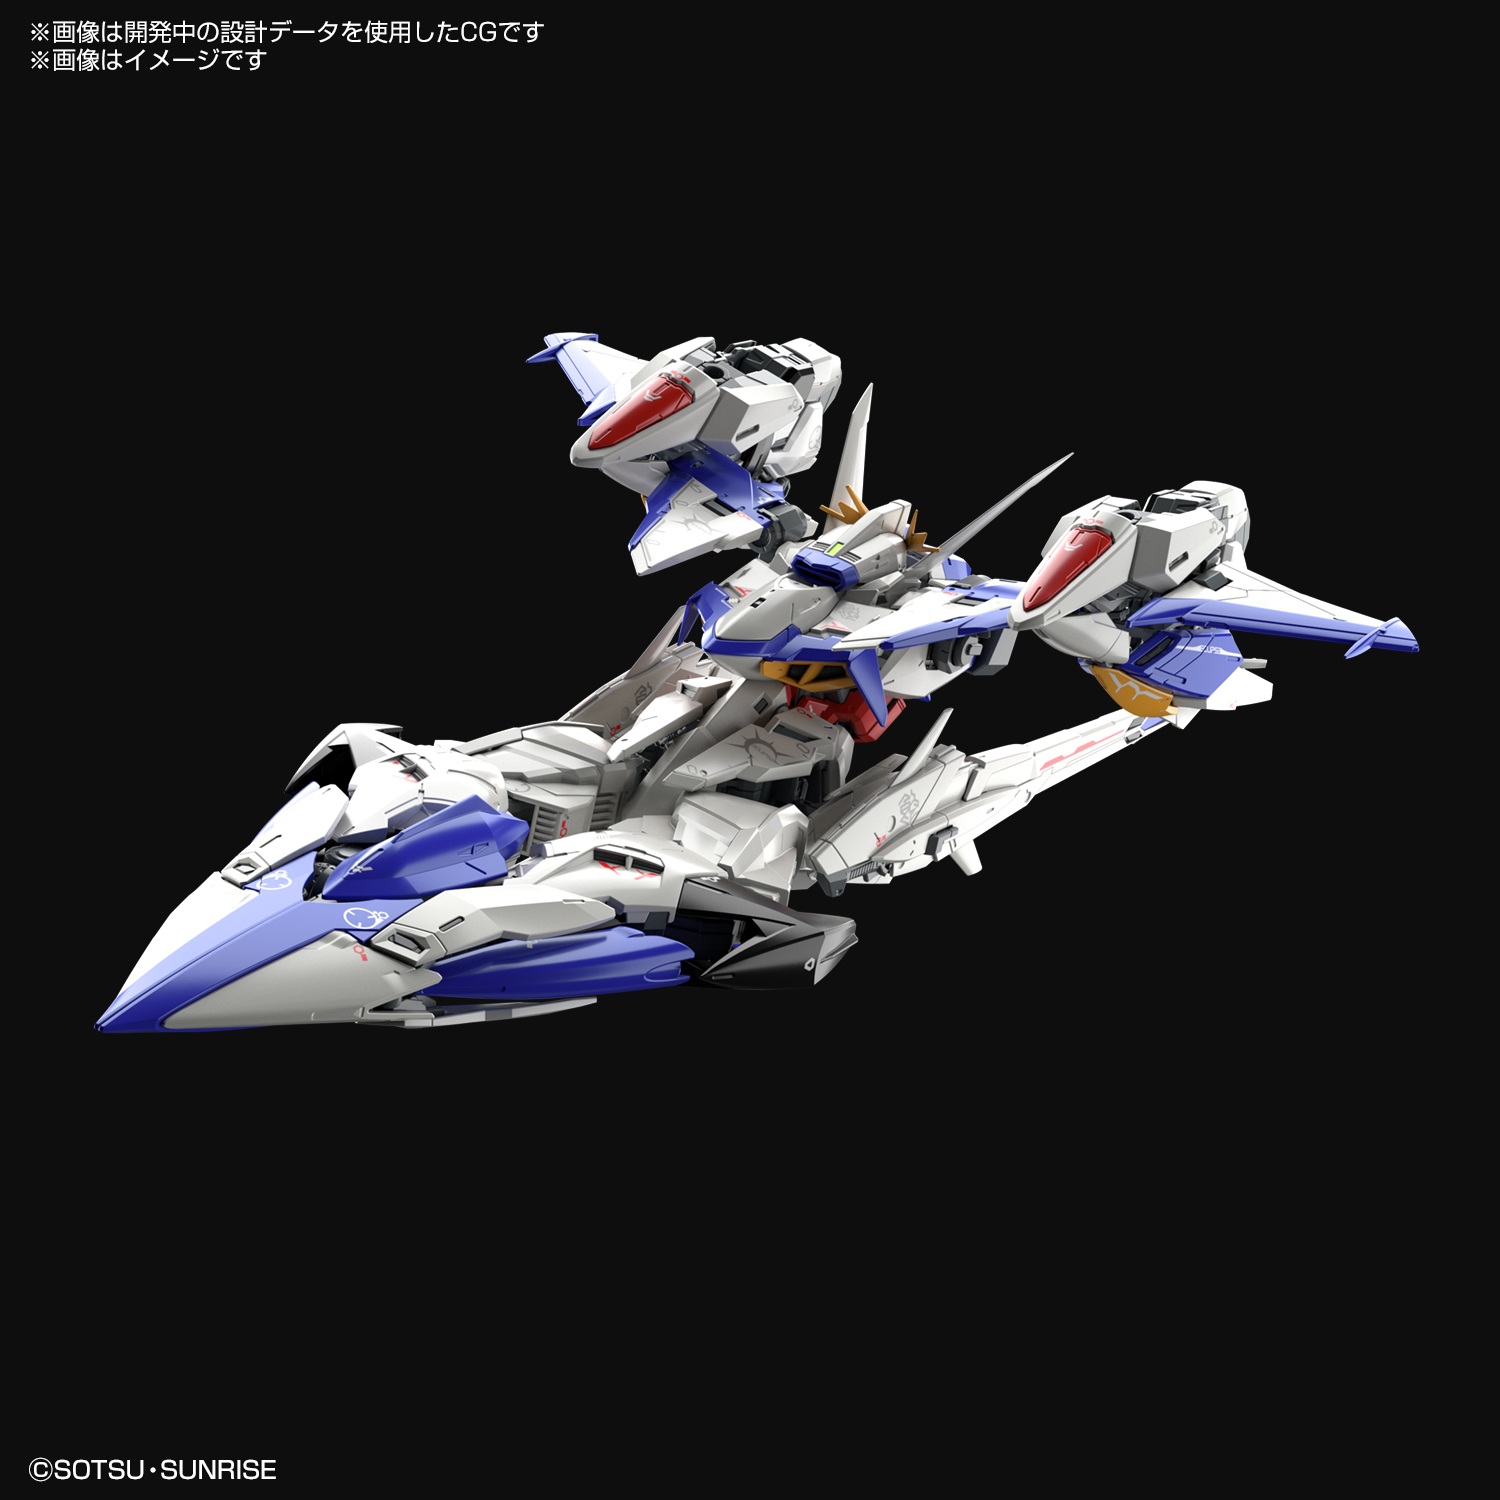 機動戦士ガンダムseed シリーズ Gundam Seed Project Ignited Project 5 Msv新企画 機動戦士ガンダムseed Eclipse より 主人公機 エクリプスガンダム が ガンプラ Mg シリーズで最速立体化決定 飛行形態からms形態への変形のほか 様々な武装